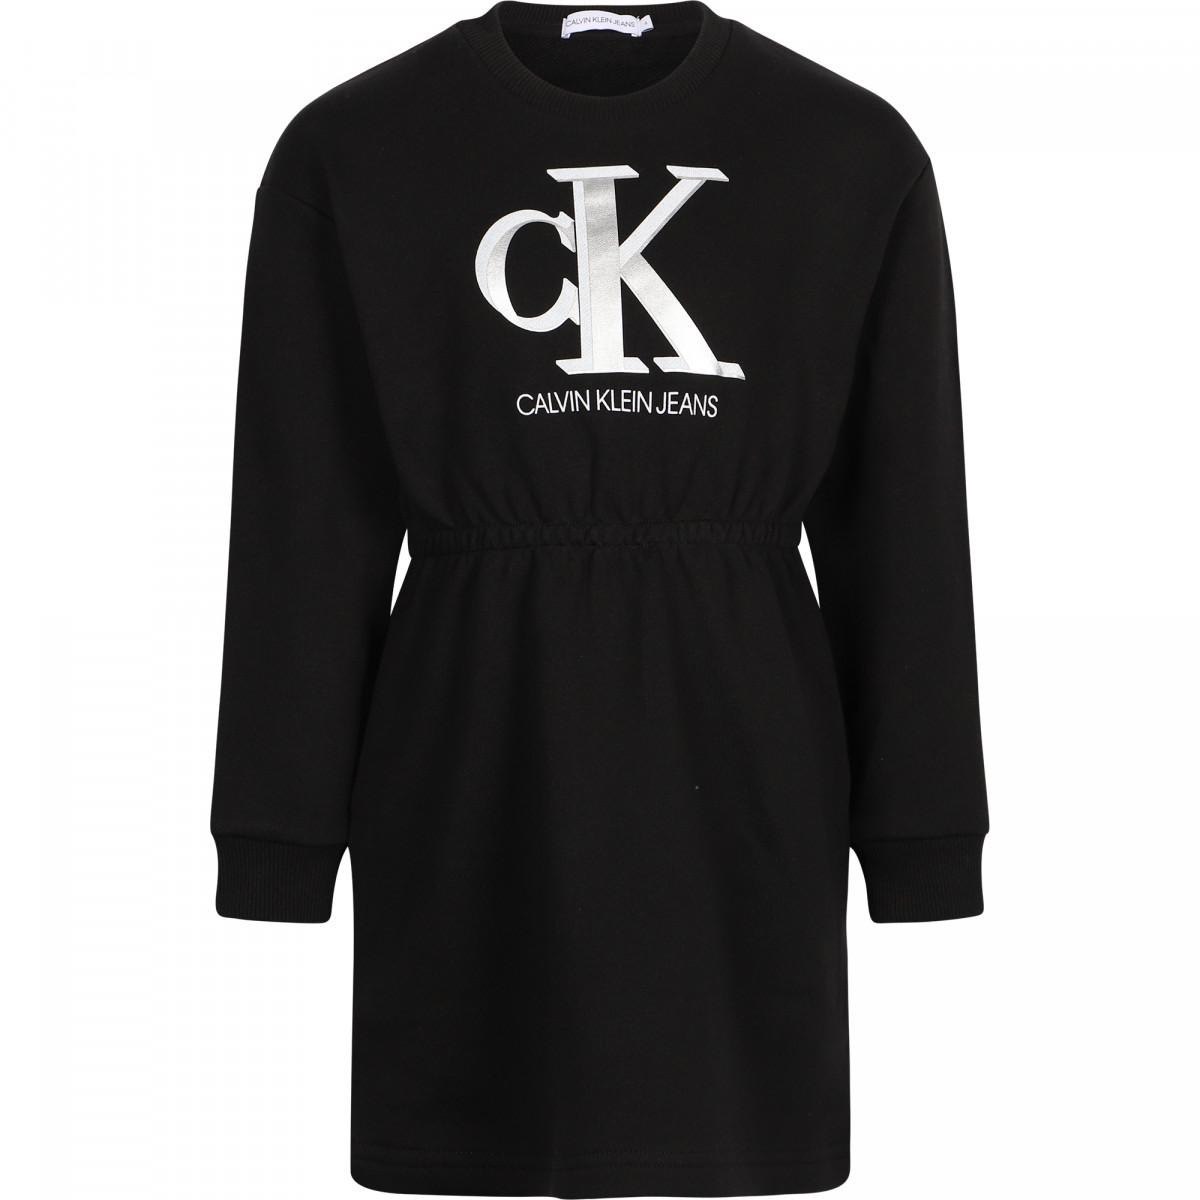 שמלה פוטר שחורה לוגו CALVIN KLEIN - מידות 4-16